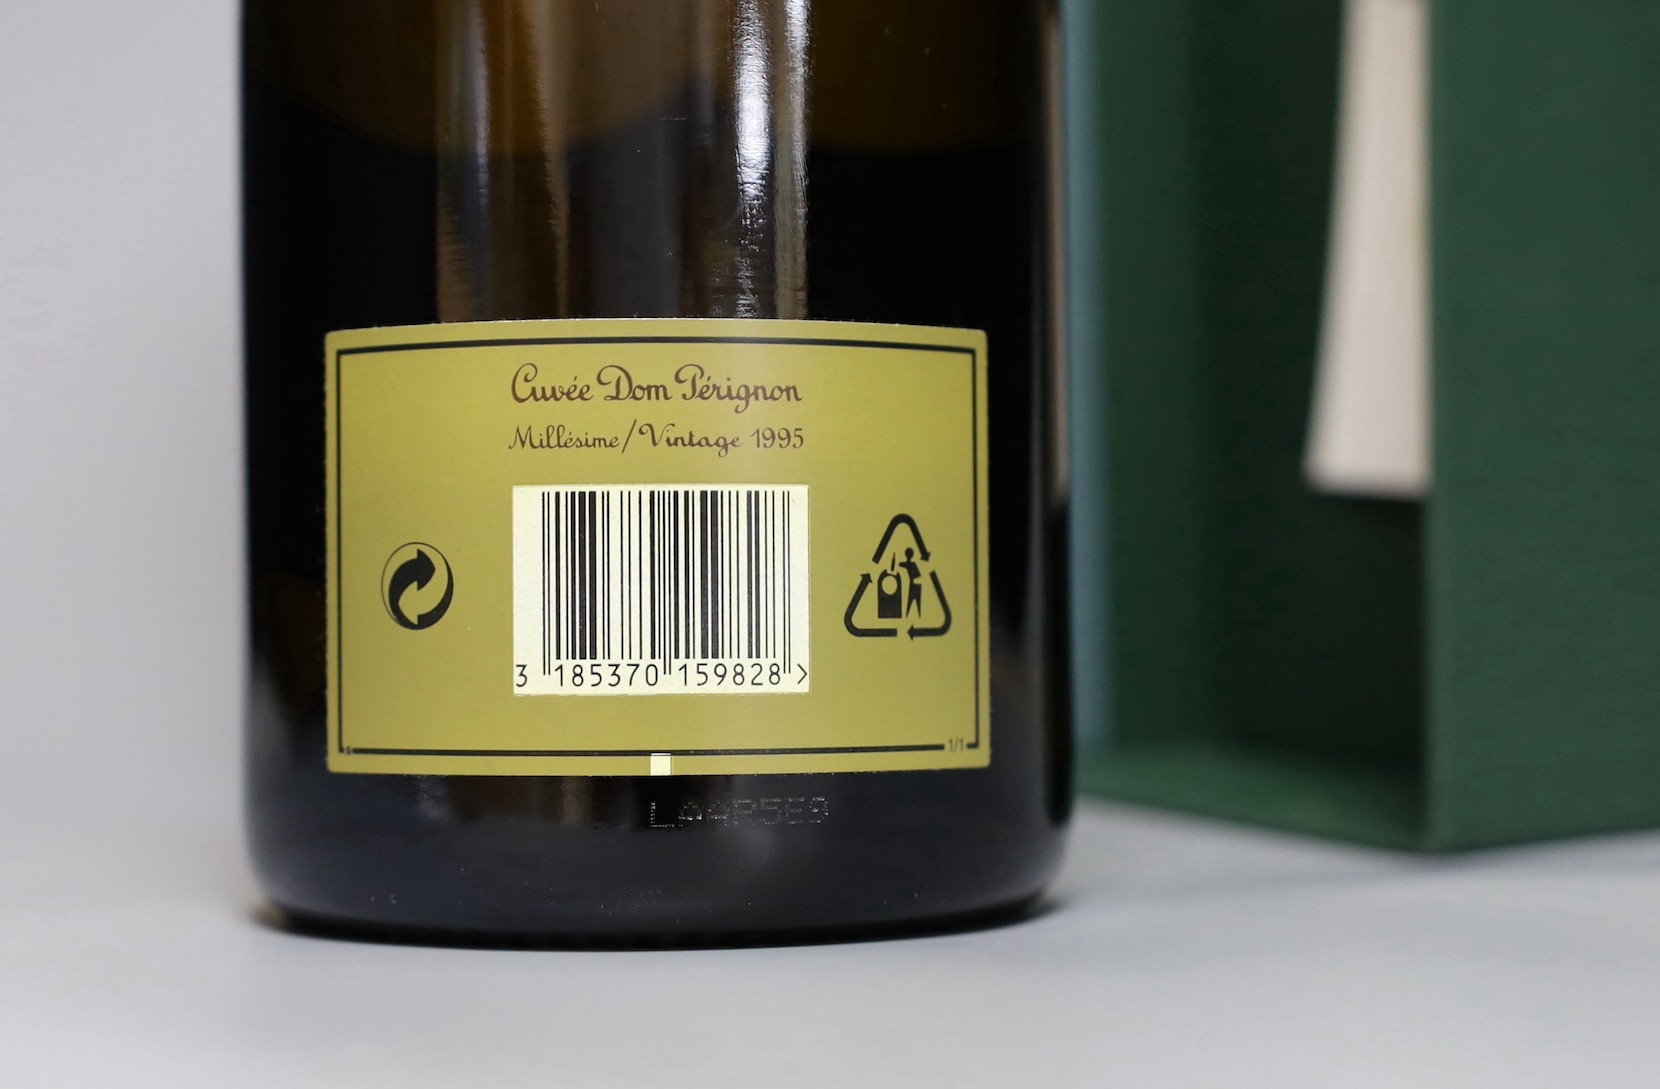 A cased bottle of Cuvée Dom Pérignon vintage 1995